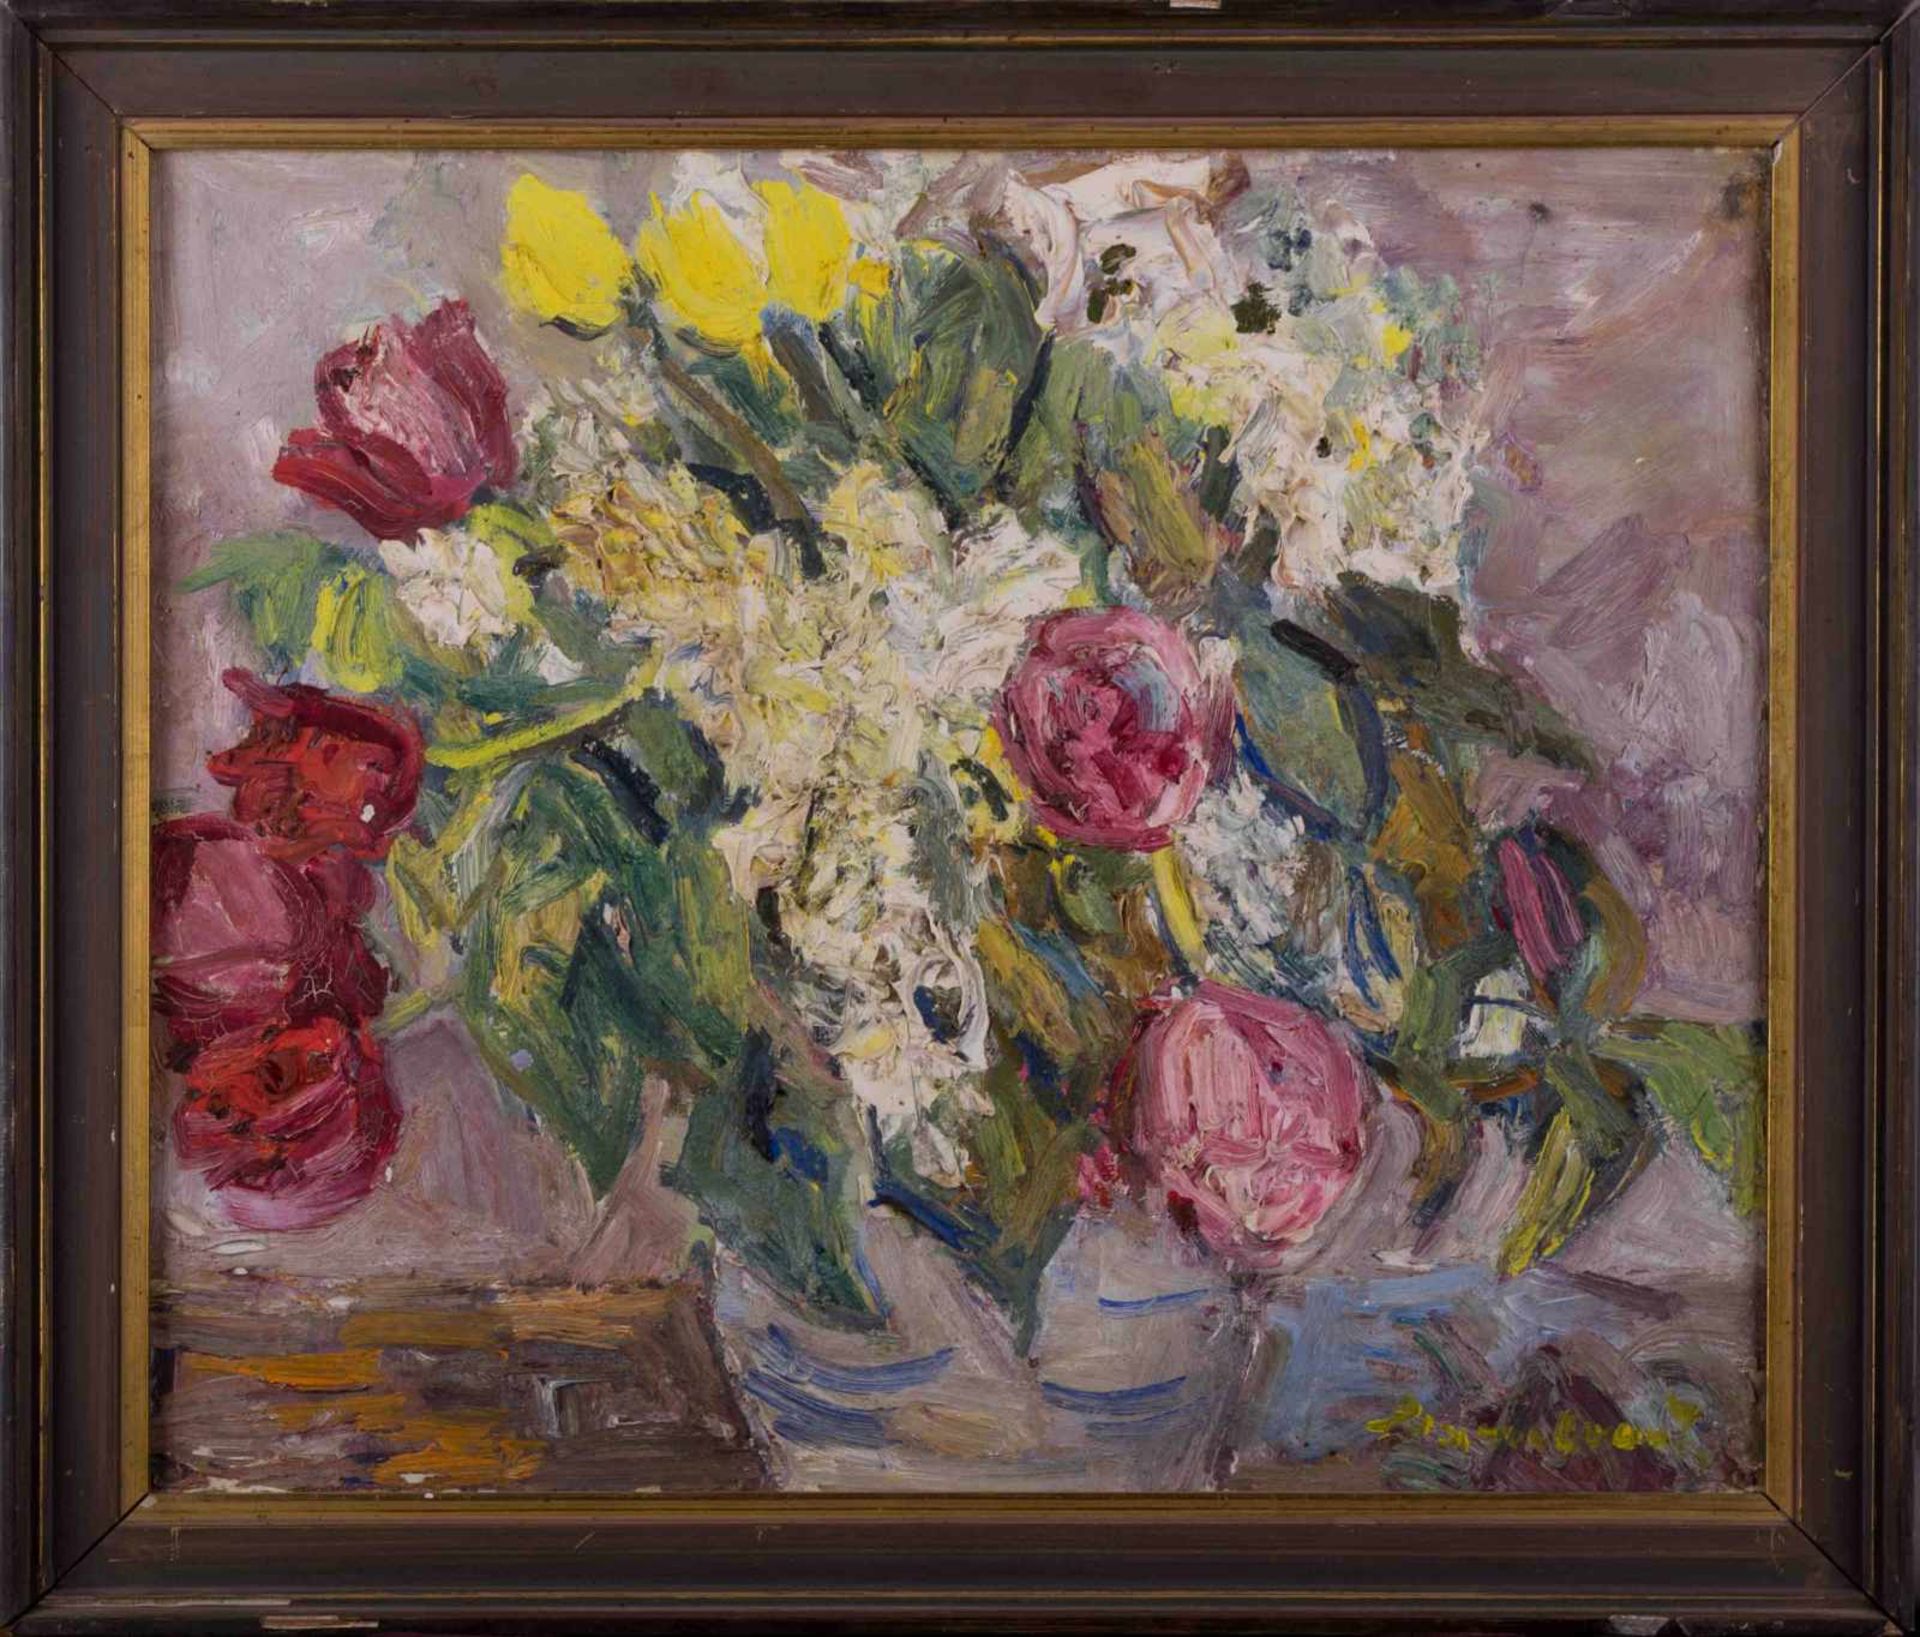 Ernst HASSEBRAUK (1905-1974) "Stillleben mit Tulpen" Gemälde Öl/Leinwand, 46,5 cm x 55 cm, rechts - Bild 2 aus 8